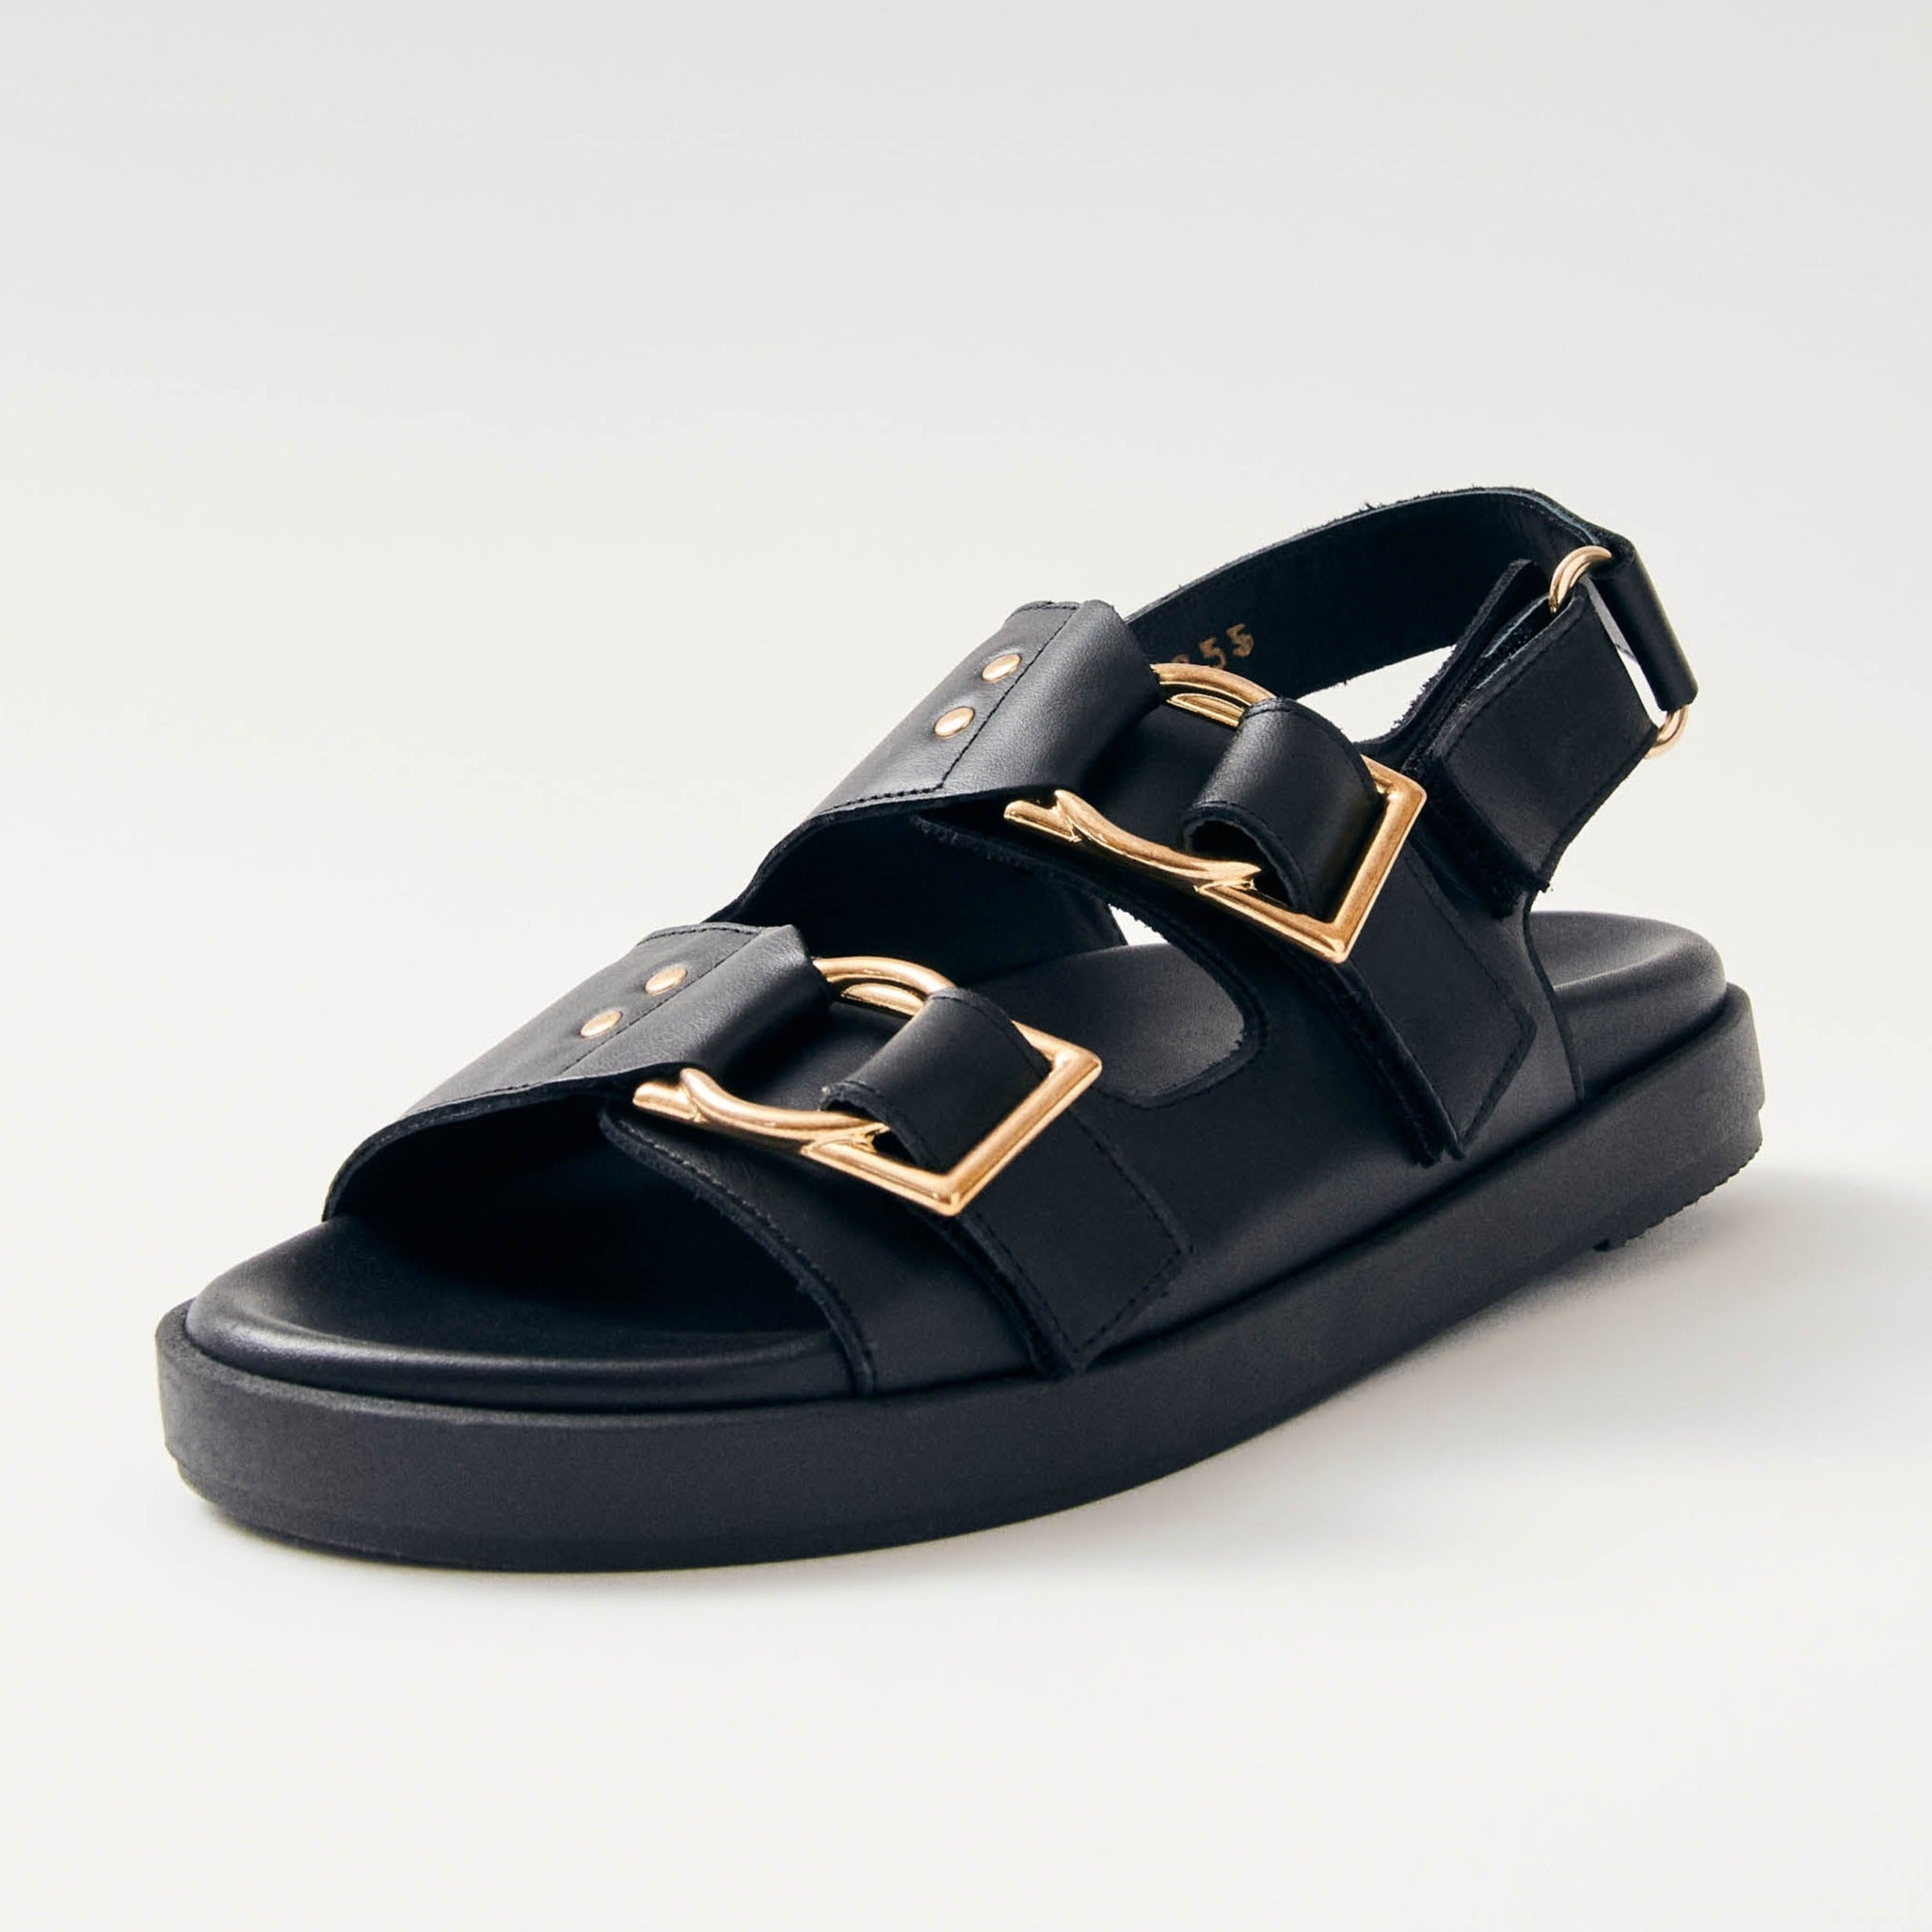 Project Cece | Maui Black Leather Sandals